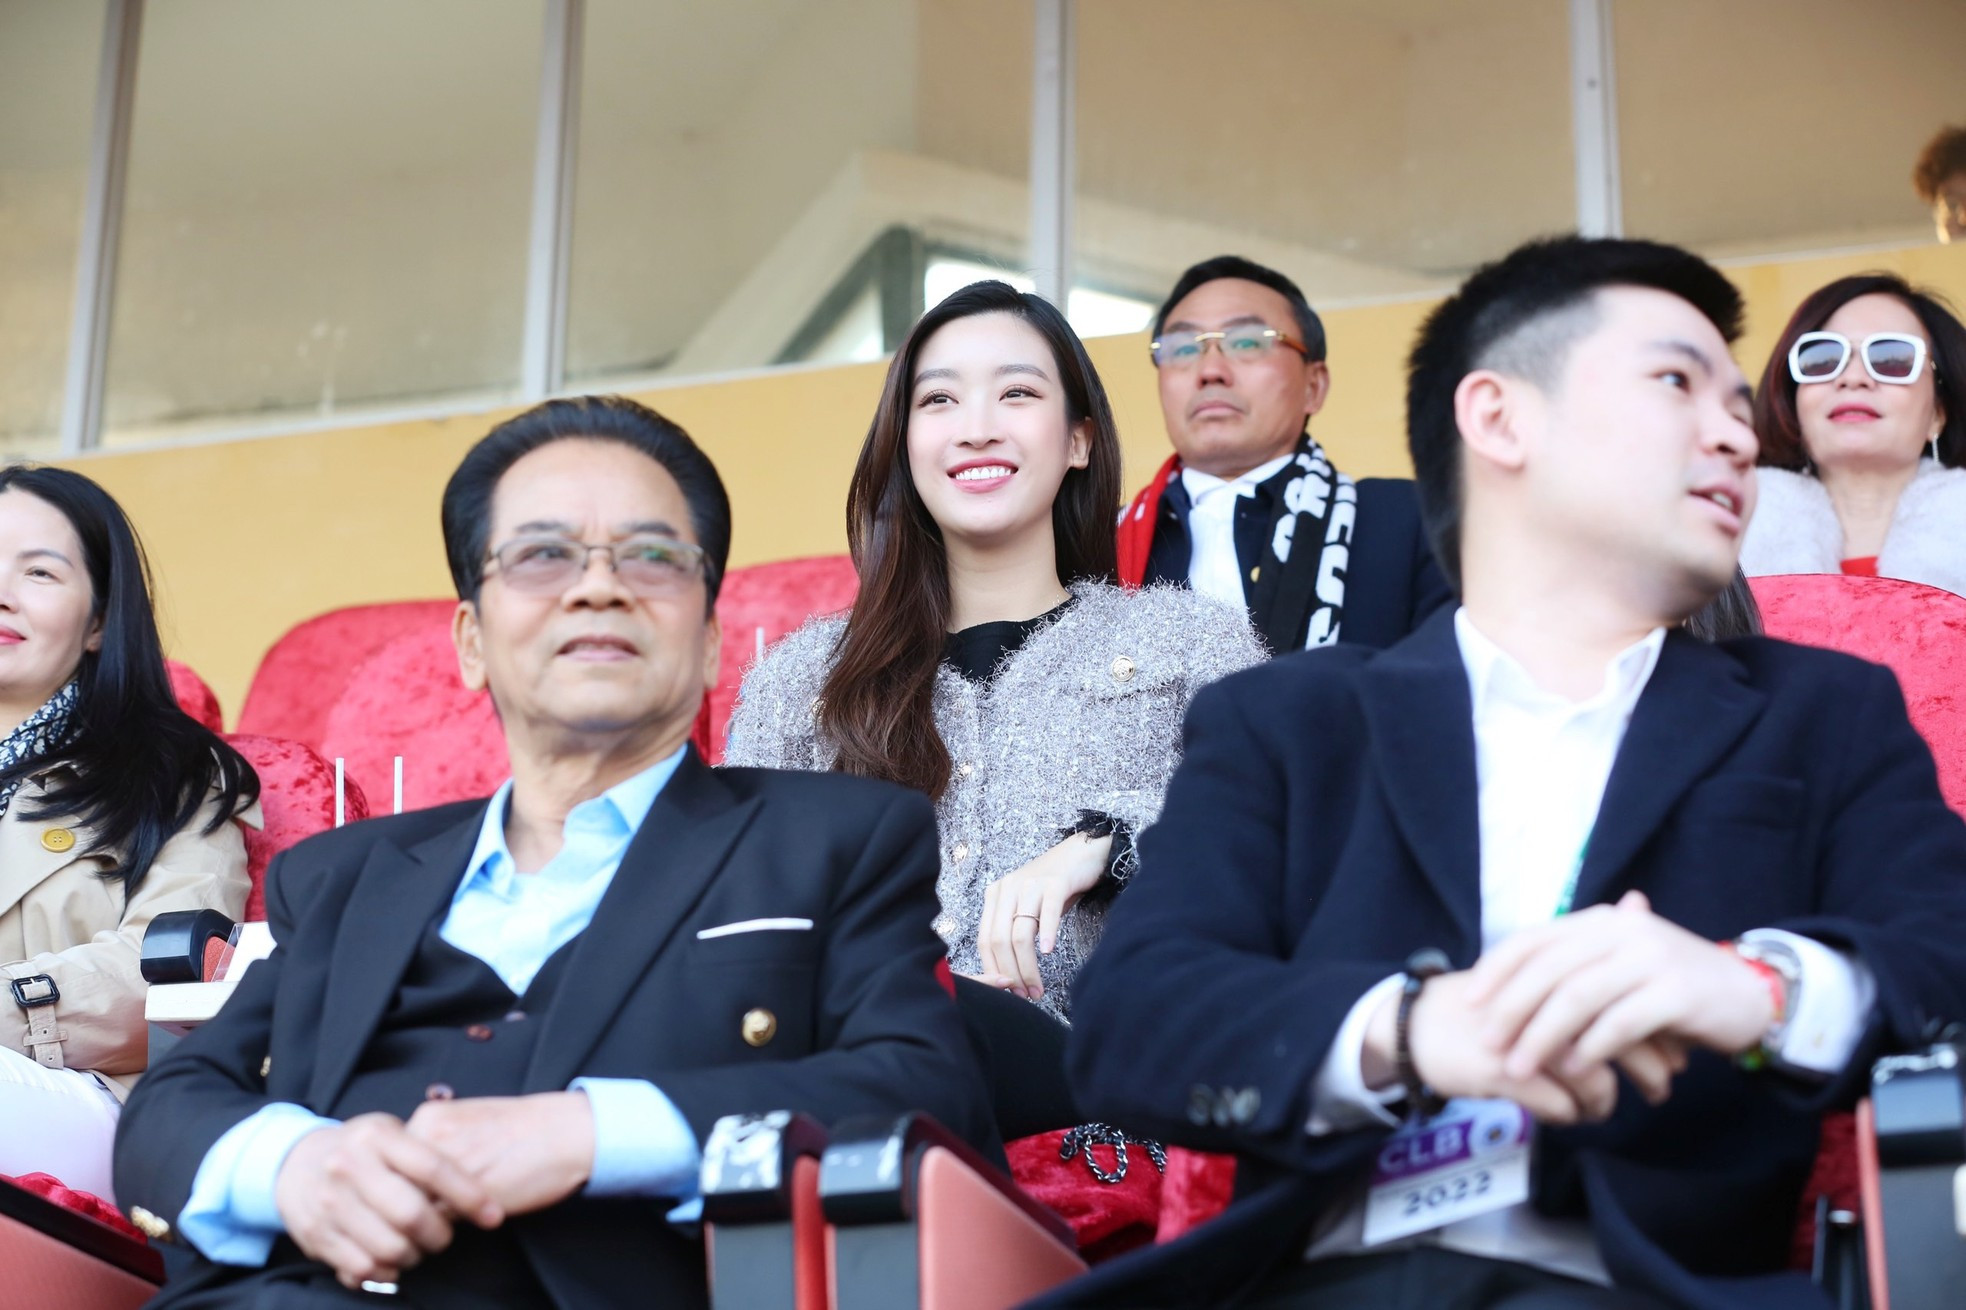 Hoa hậu Đỗ Mỹ Linh đến sân Hàng Đẫy cổ vũ đội bóng của ông xã tranh Siêu cúp ảnh 4